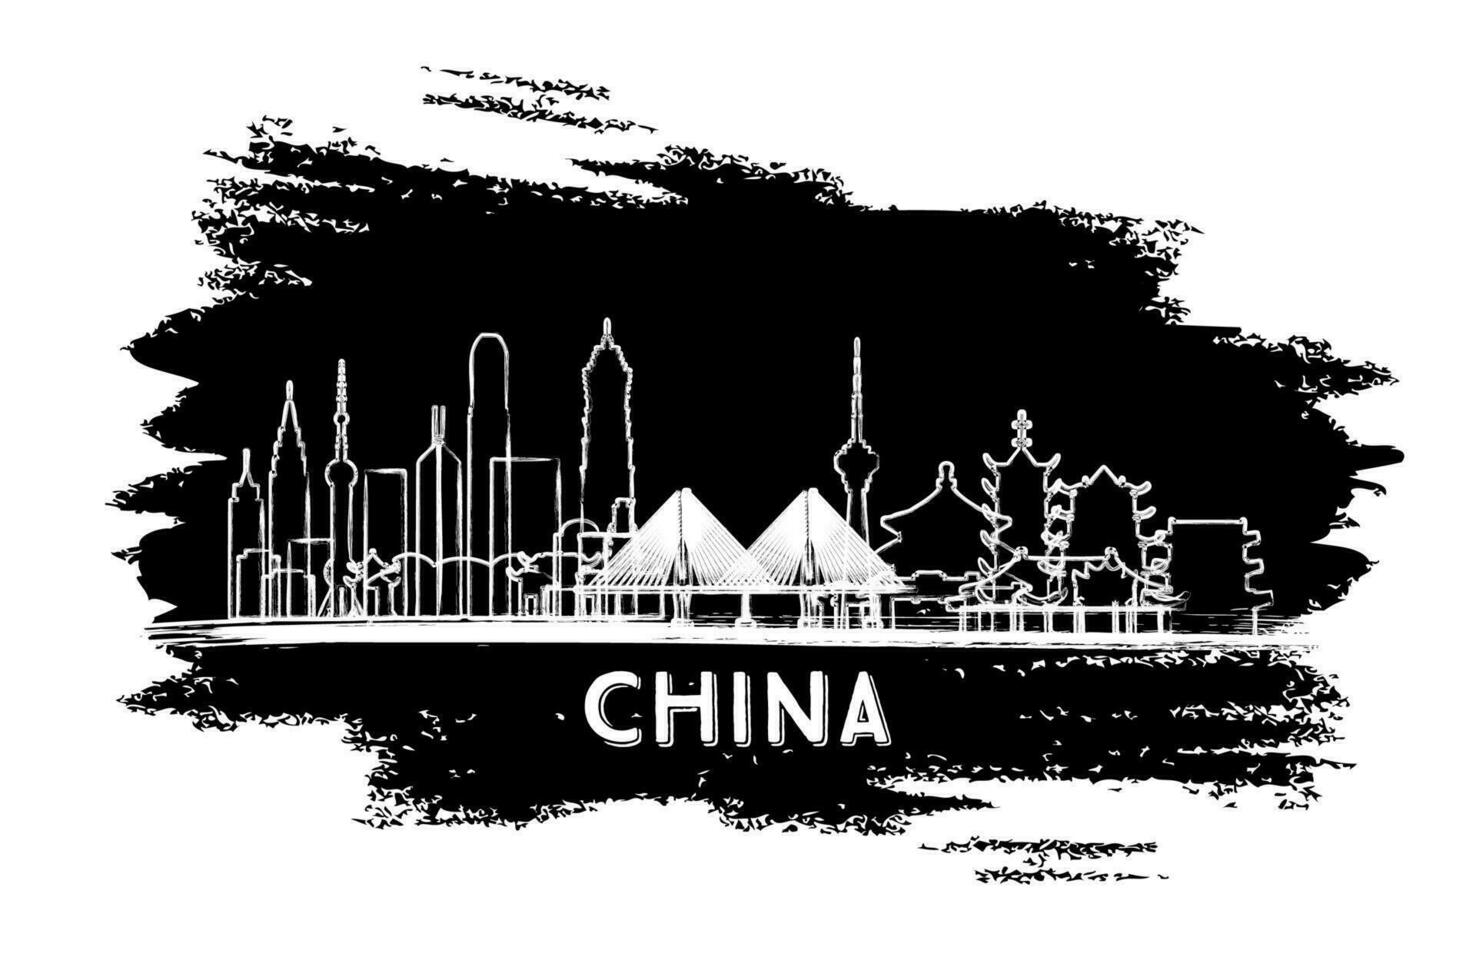 China Stadt Horizont Silhouette. Hand gezeichnet skizzieren. Geschäft Reise und Tourismus Konzept mit modern die Architektur. vektor